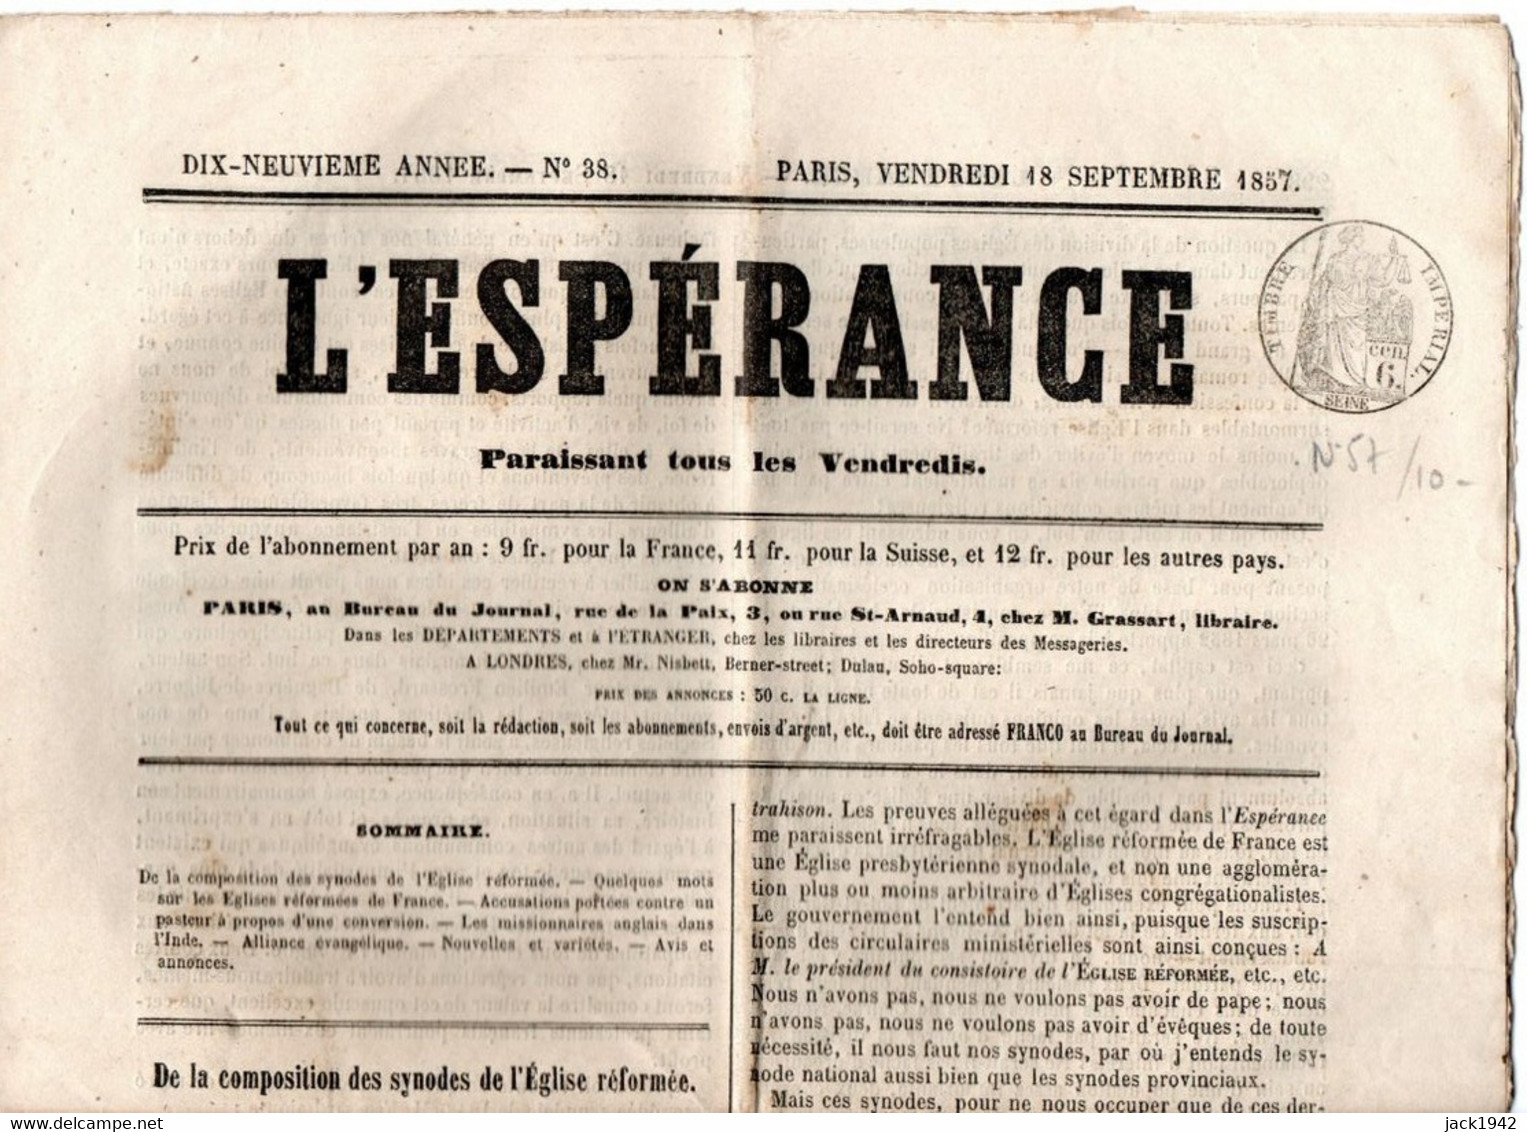 Journal L'Espérance Du 18 Septembre 1857, Avec Timbre Humide " Timbre / Impérial 6 Centimes" - Zeitungsmarken (Streifbänder)